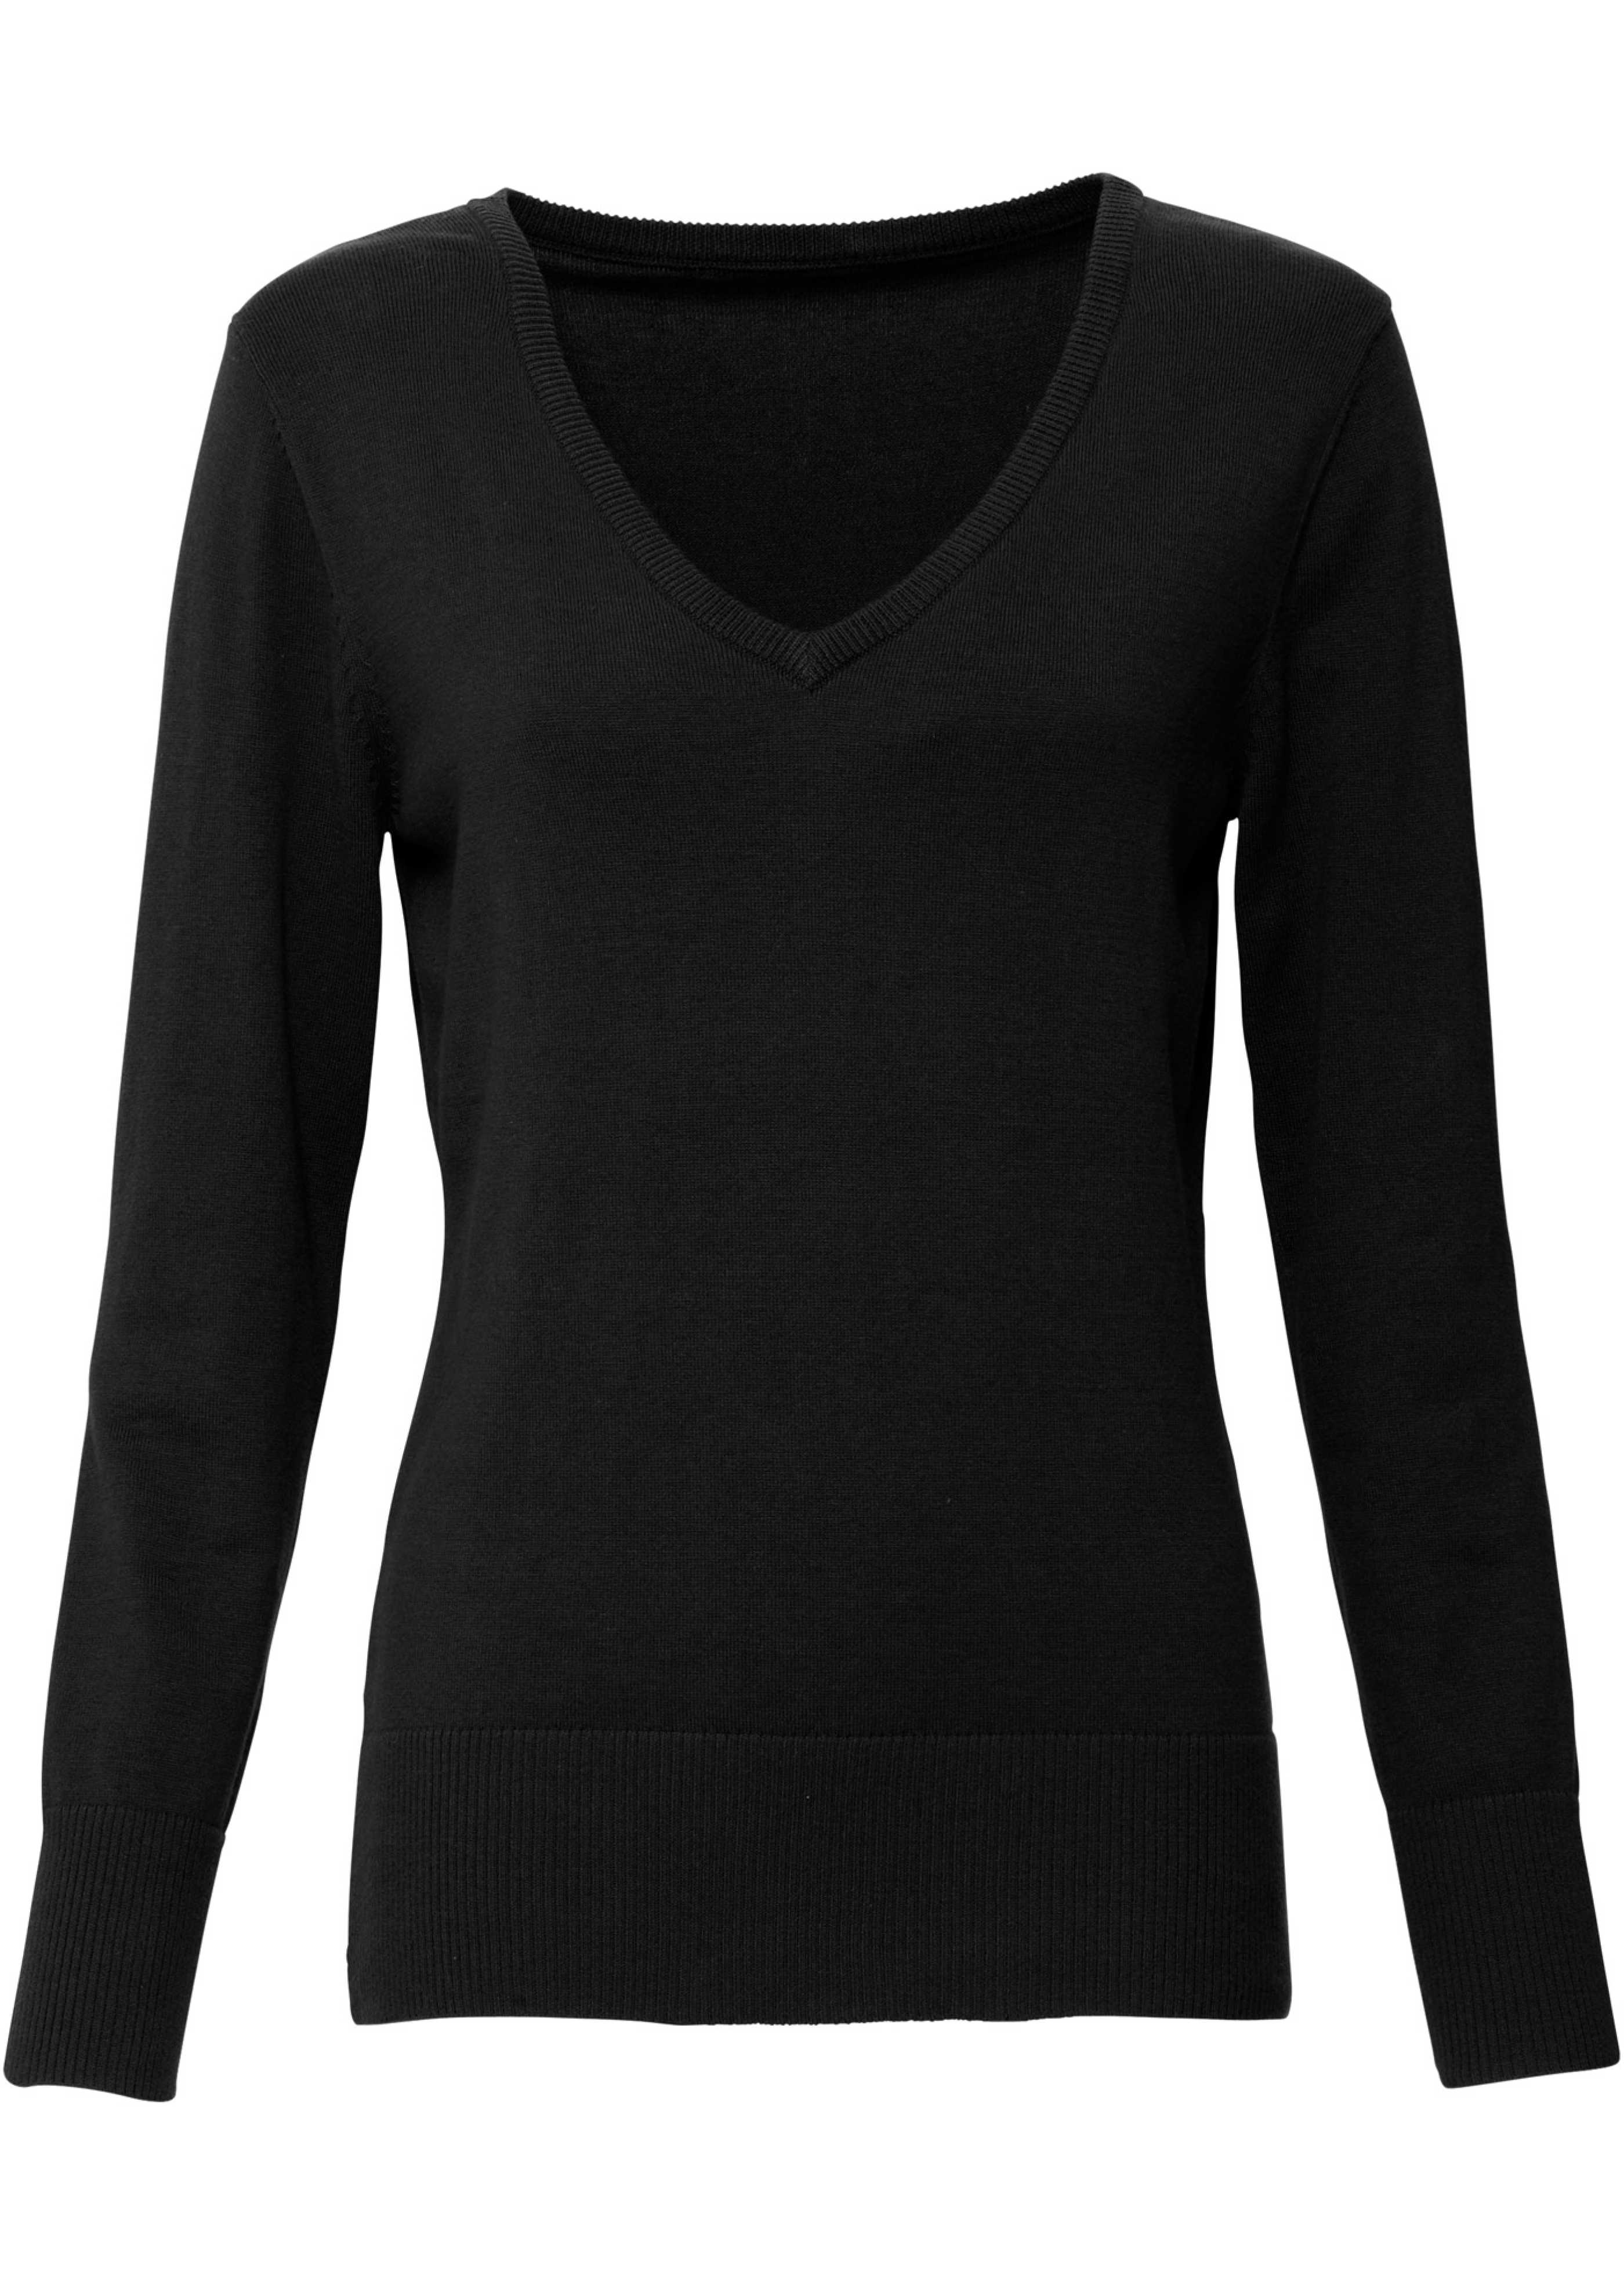 Легкая черная кофта. Джемпер с v образным вырезом. Чёрная кофта женская. Черный кафтан. Черный свитер женский.